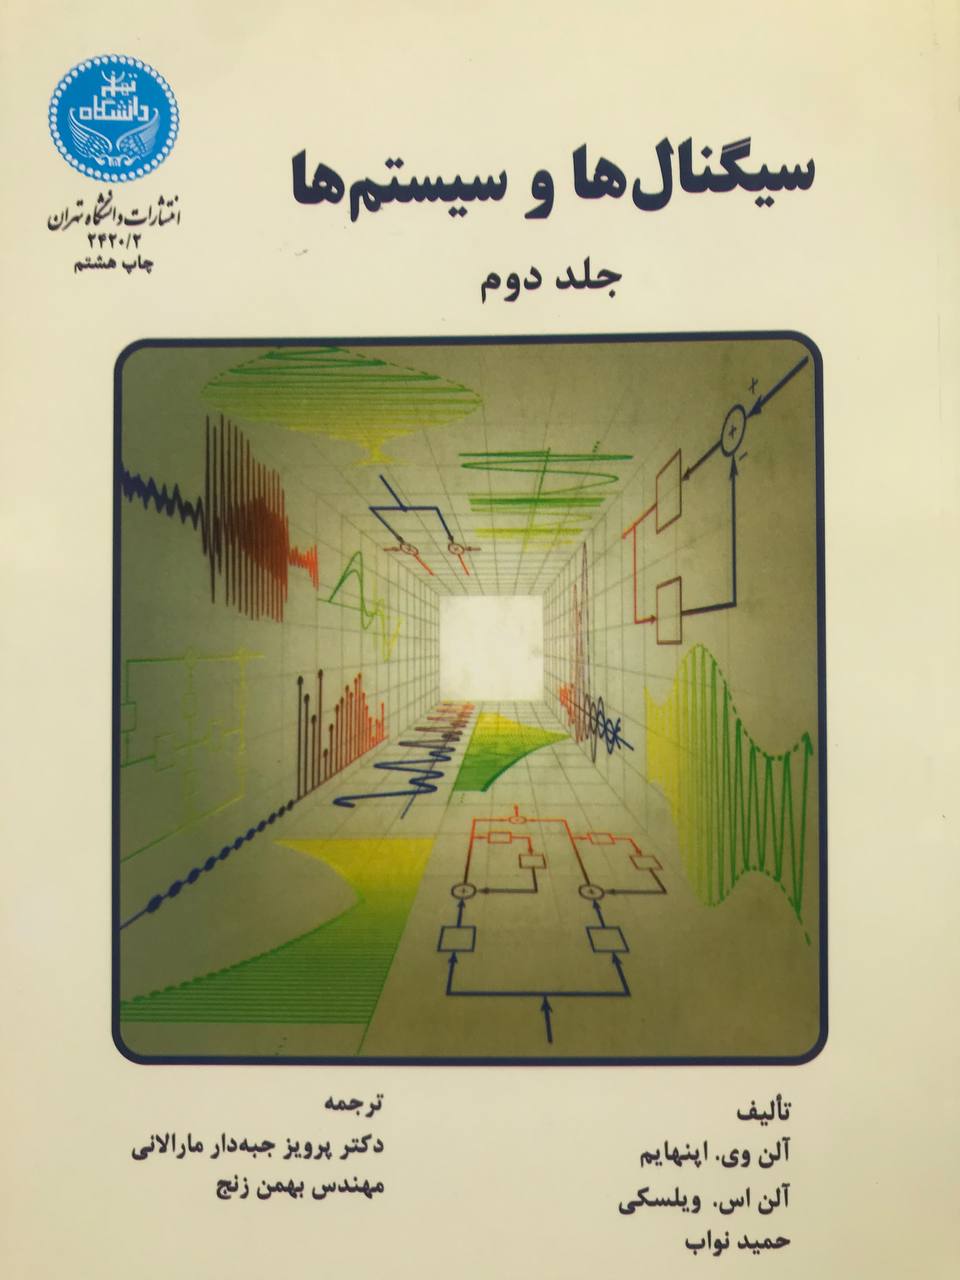 سیگنال ها و سیستم ها آلن وی. اپنهایم جلد دوم انتشارات دانشگاه تهران